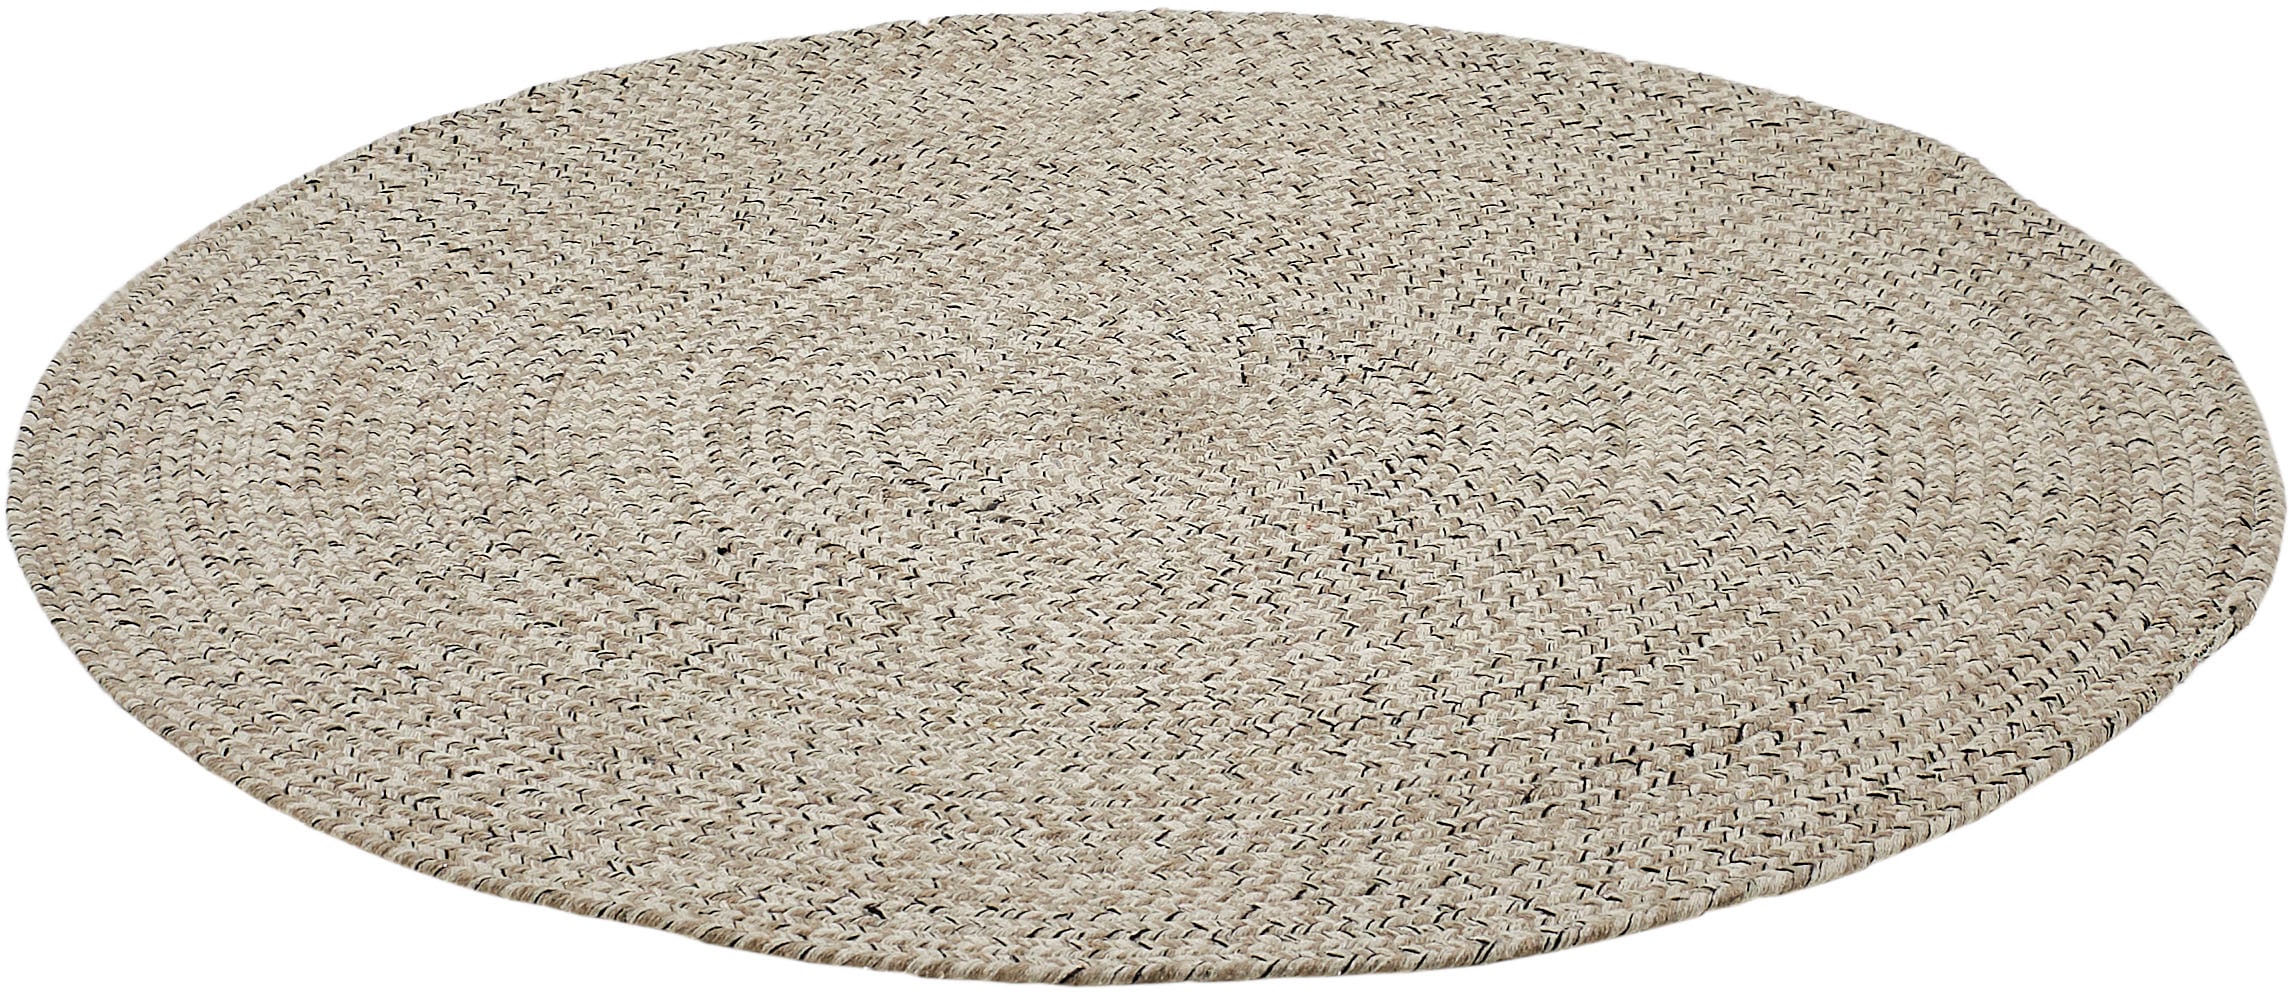 Teppich »Varberg«, rund, Handweb Teppich, meliert, reine Baumwolle, handgewebt